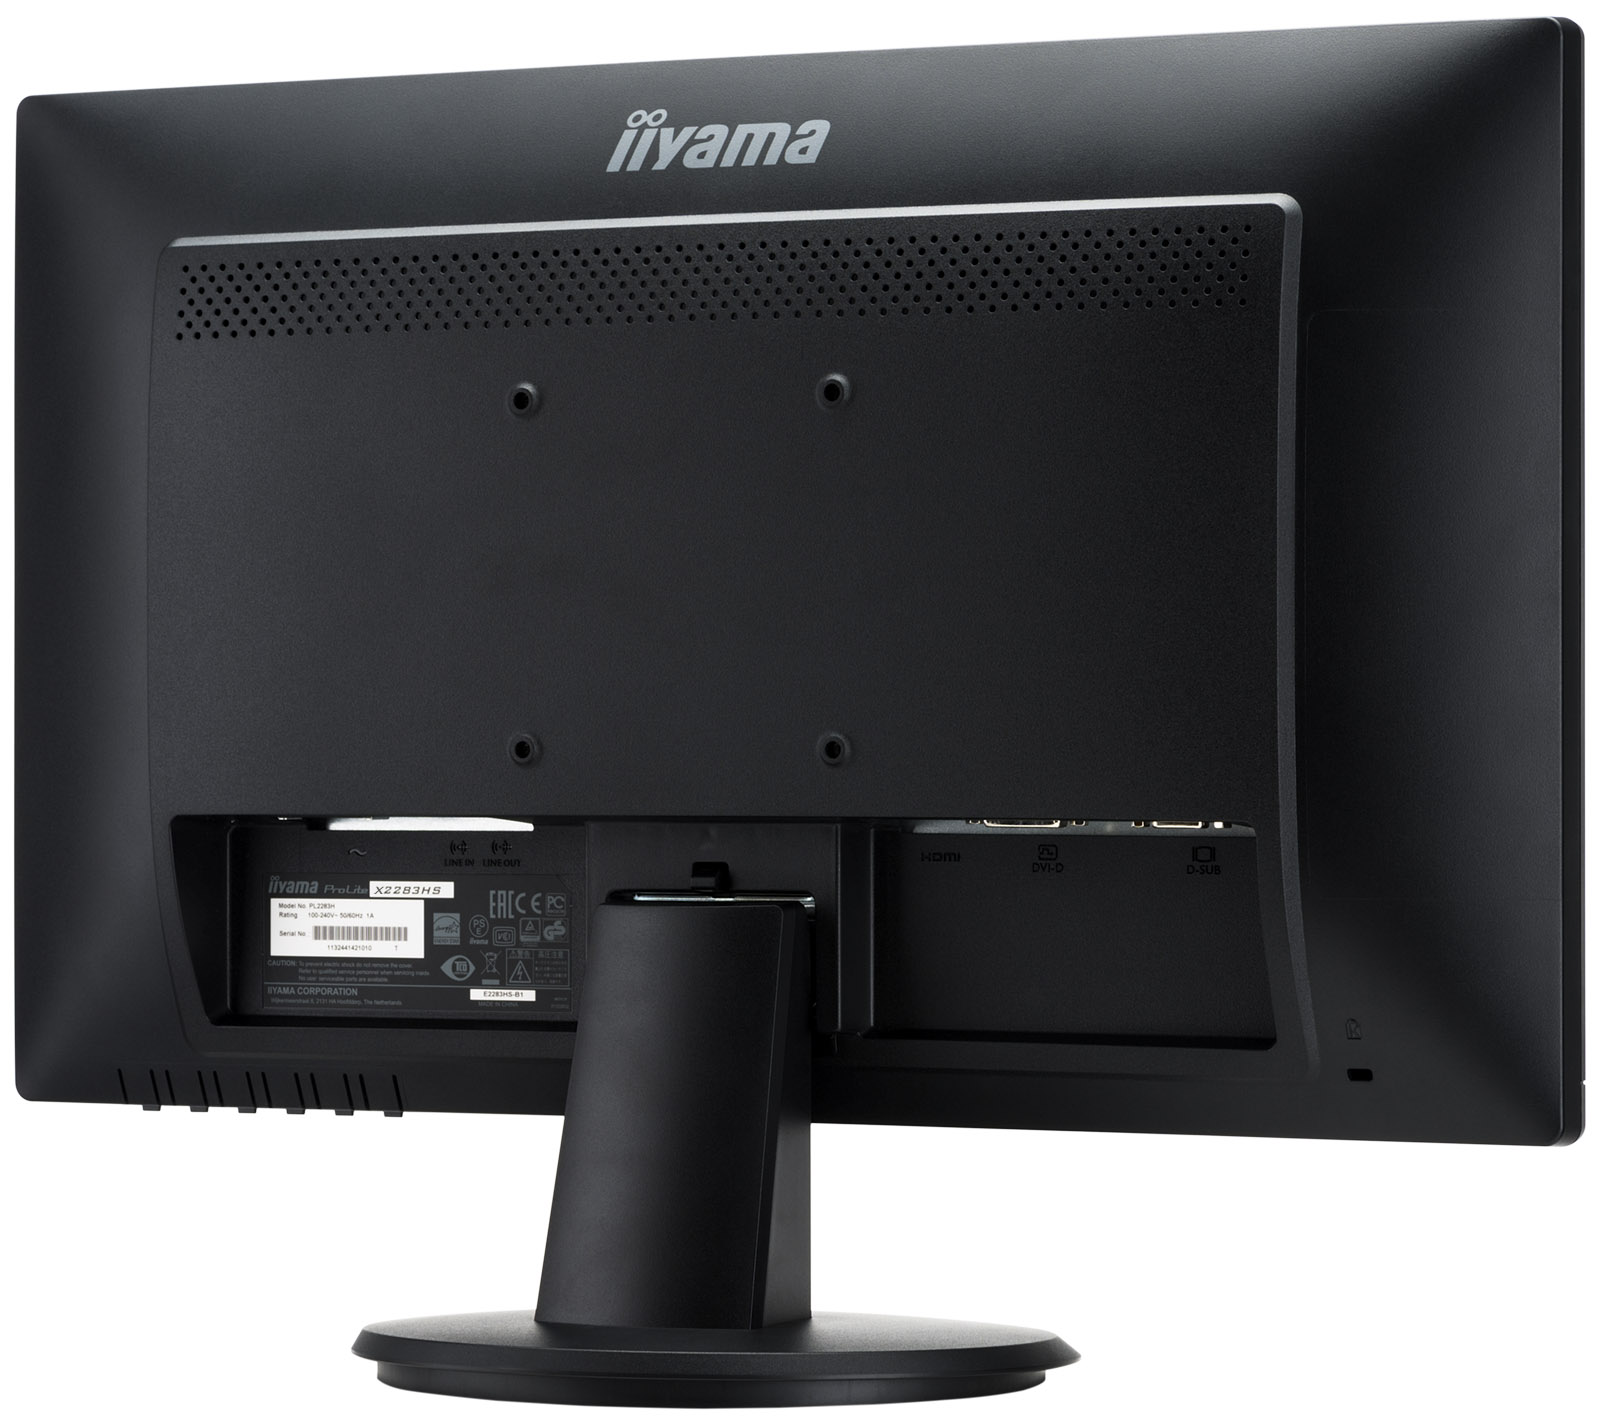 Immagine pubblicata in relazione al seguente contenuto: Iiliama lancia il monitor ProLite X2283HS con pannello VA Full HD da 22-inch | Nome immagine: news27821_Iiliama-ProLite-X2283HS_2.jpg